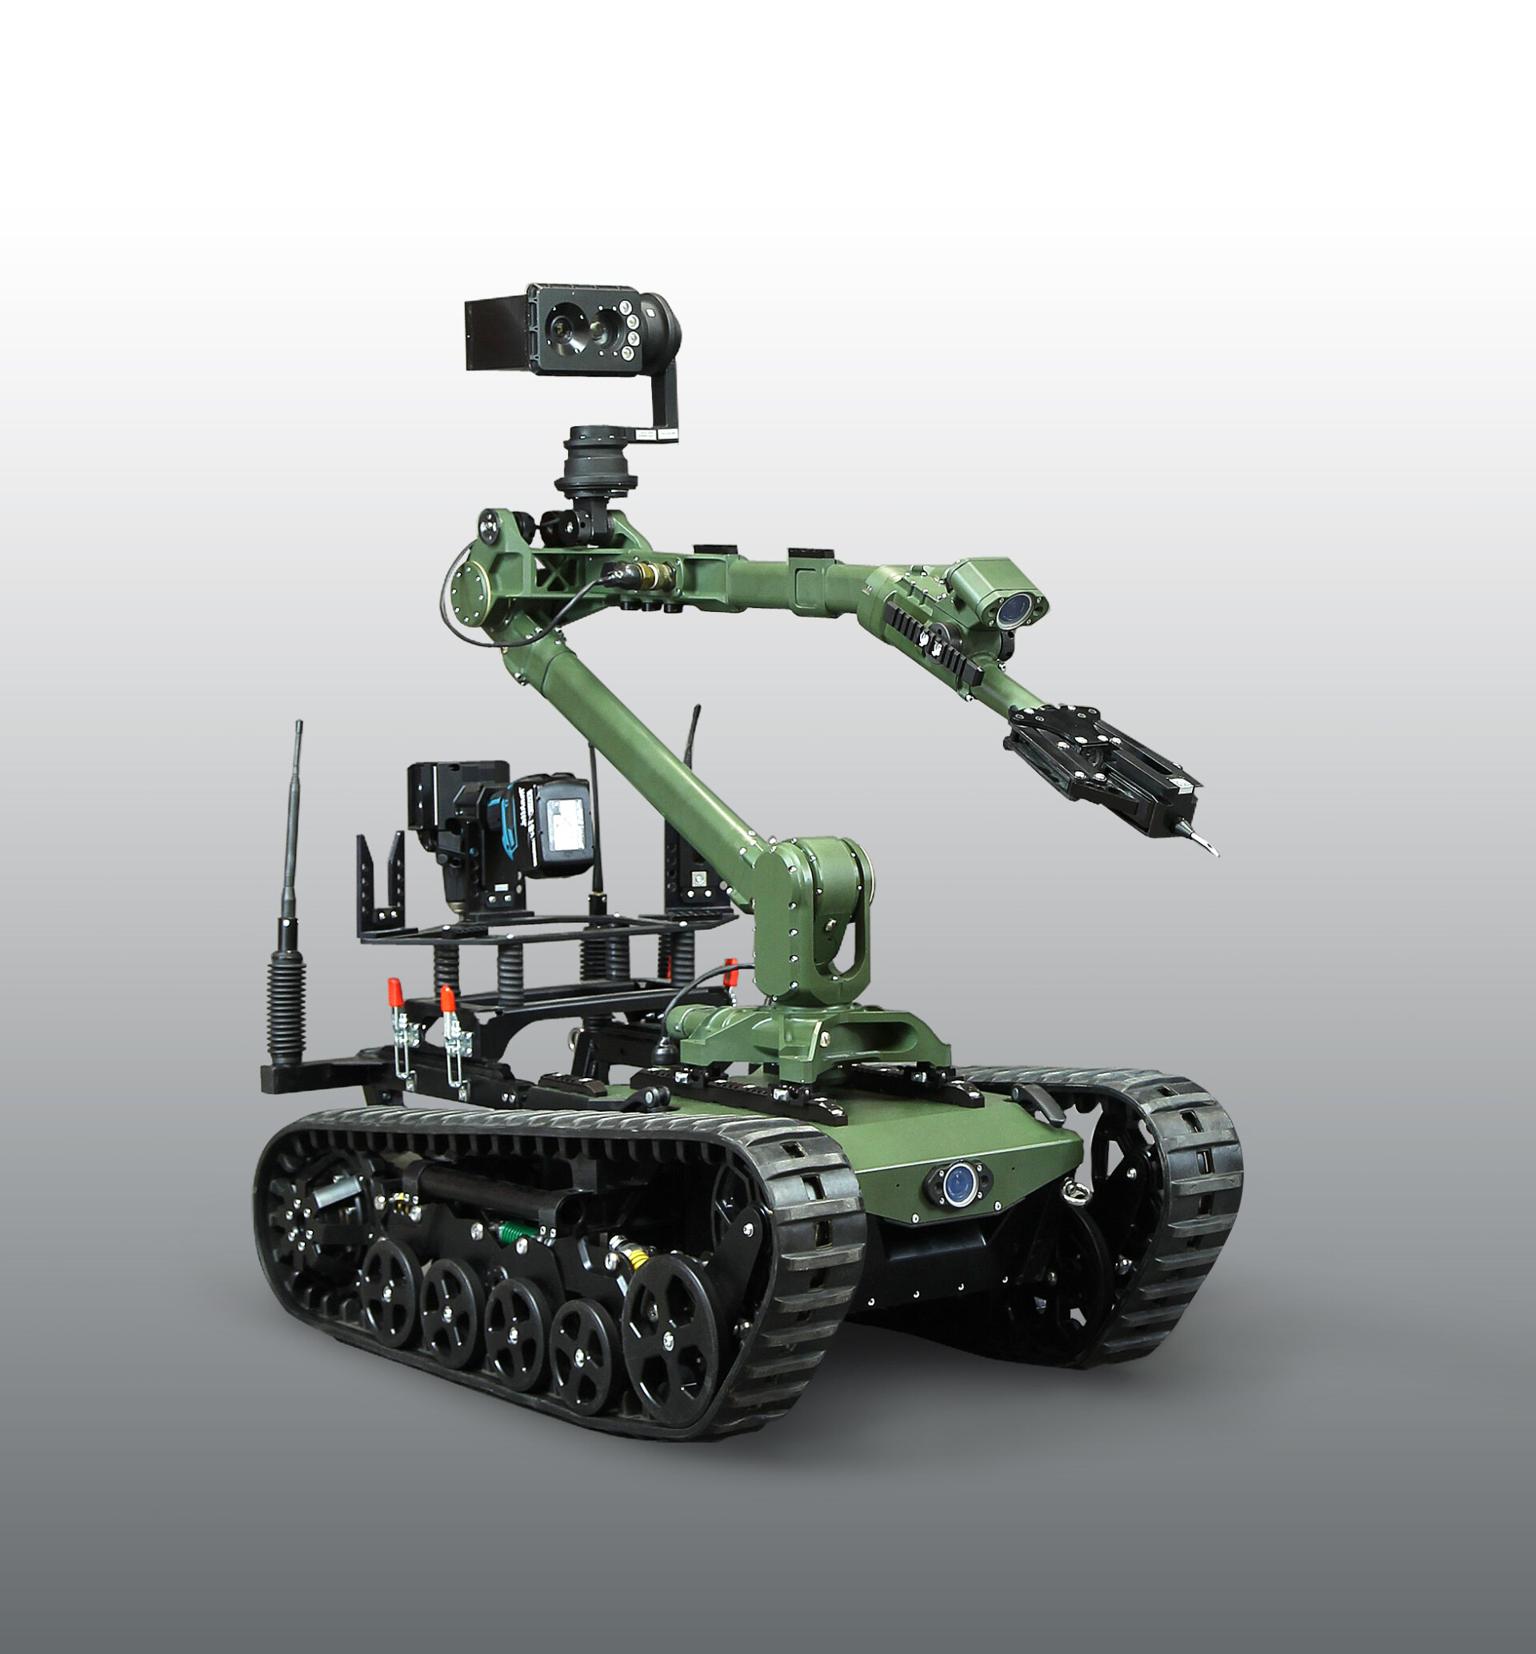 Technologia i innowacje: jak roboty i drony zmieniają polskie wojsko